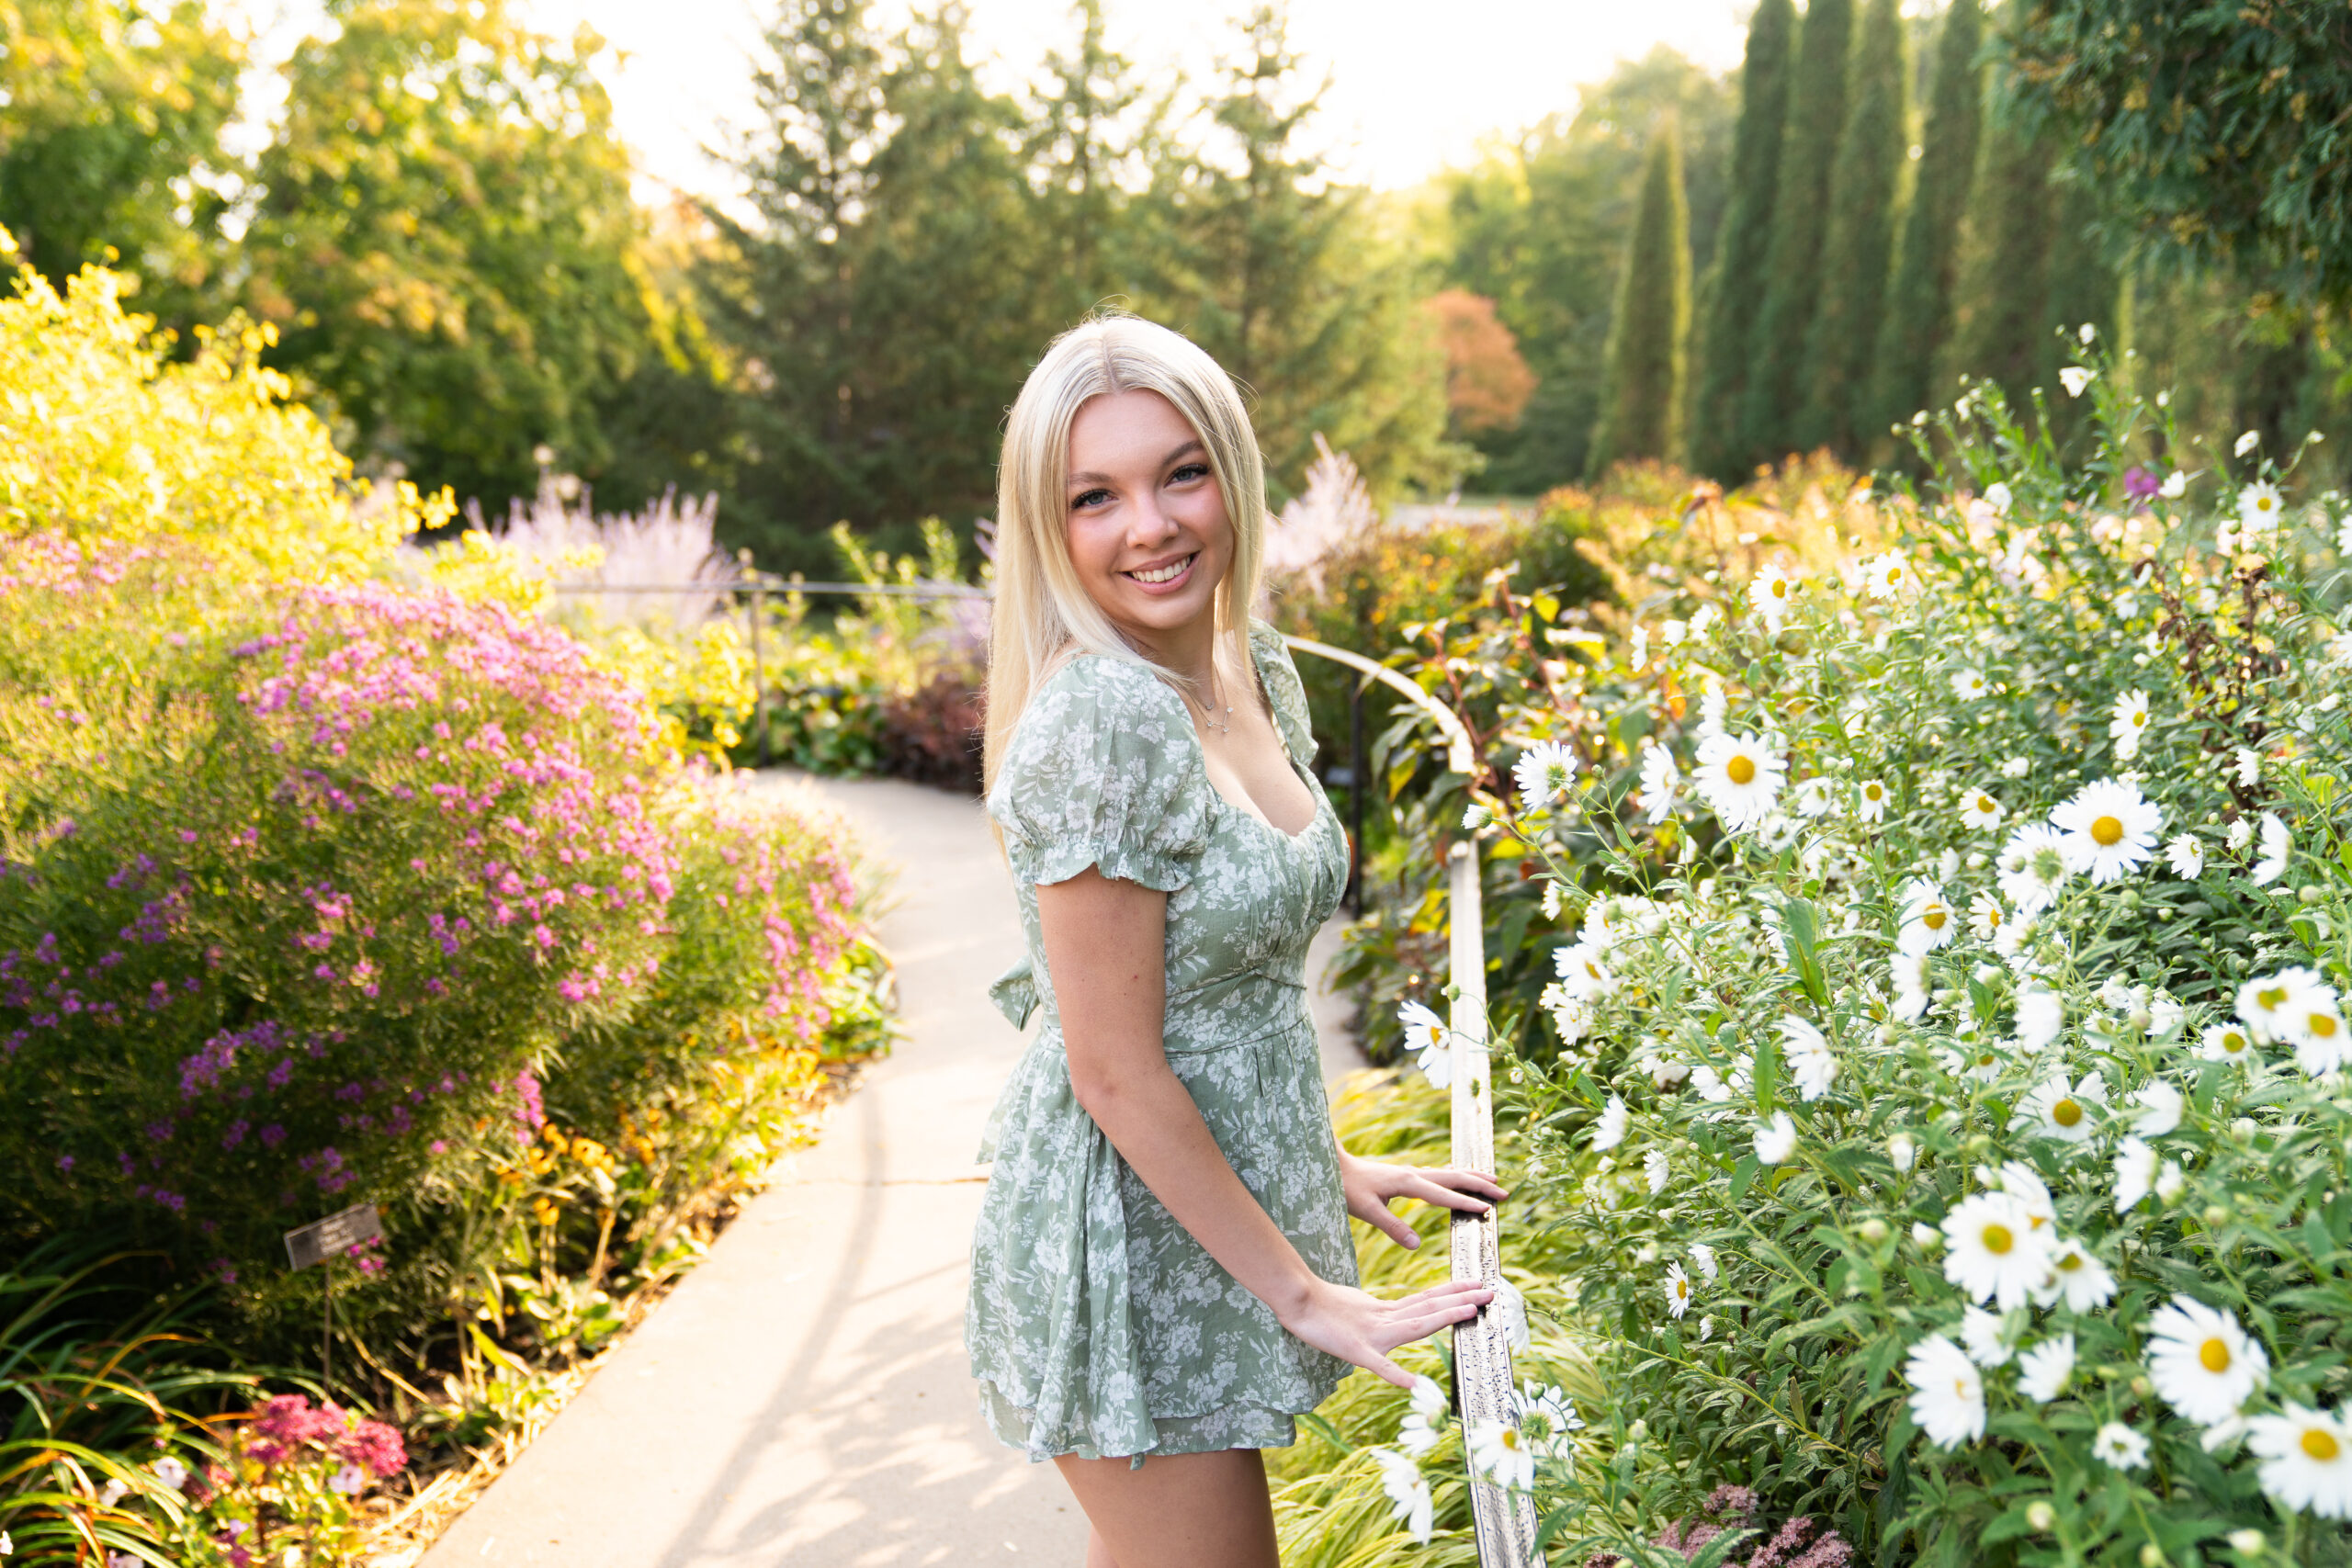 Teen girl poses in a flower garden for her senior photos at the Minnesota Landscape Arboretum in Chaska, Minnesota.